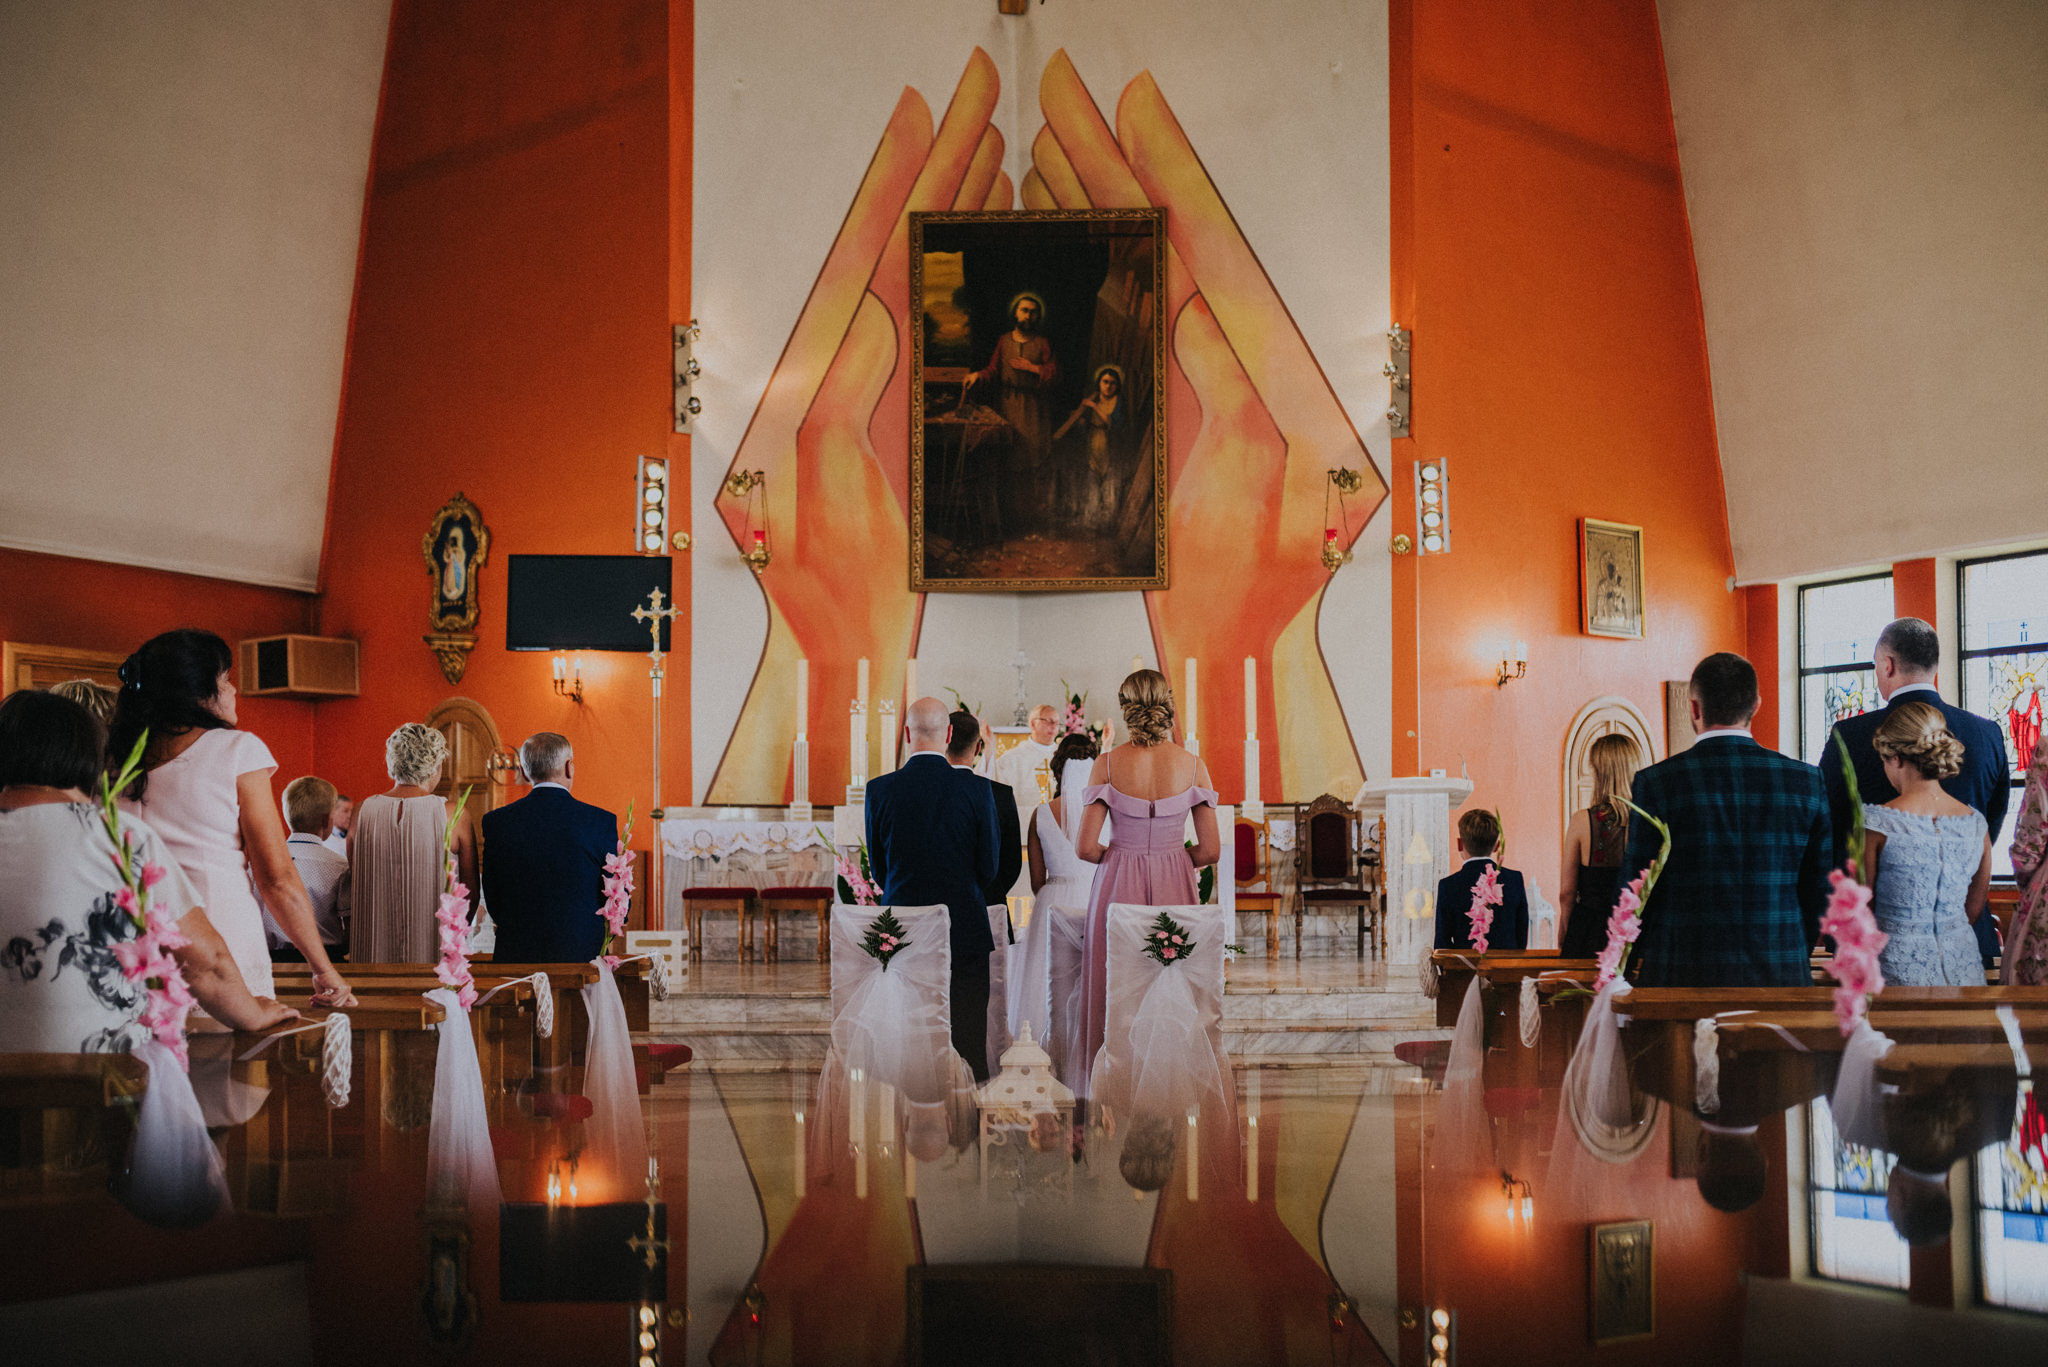 Karolina + Artur | Rustykalna sesja ślubna w Górnośląskim Parku Etnograficznym w Chorzowie